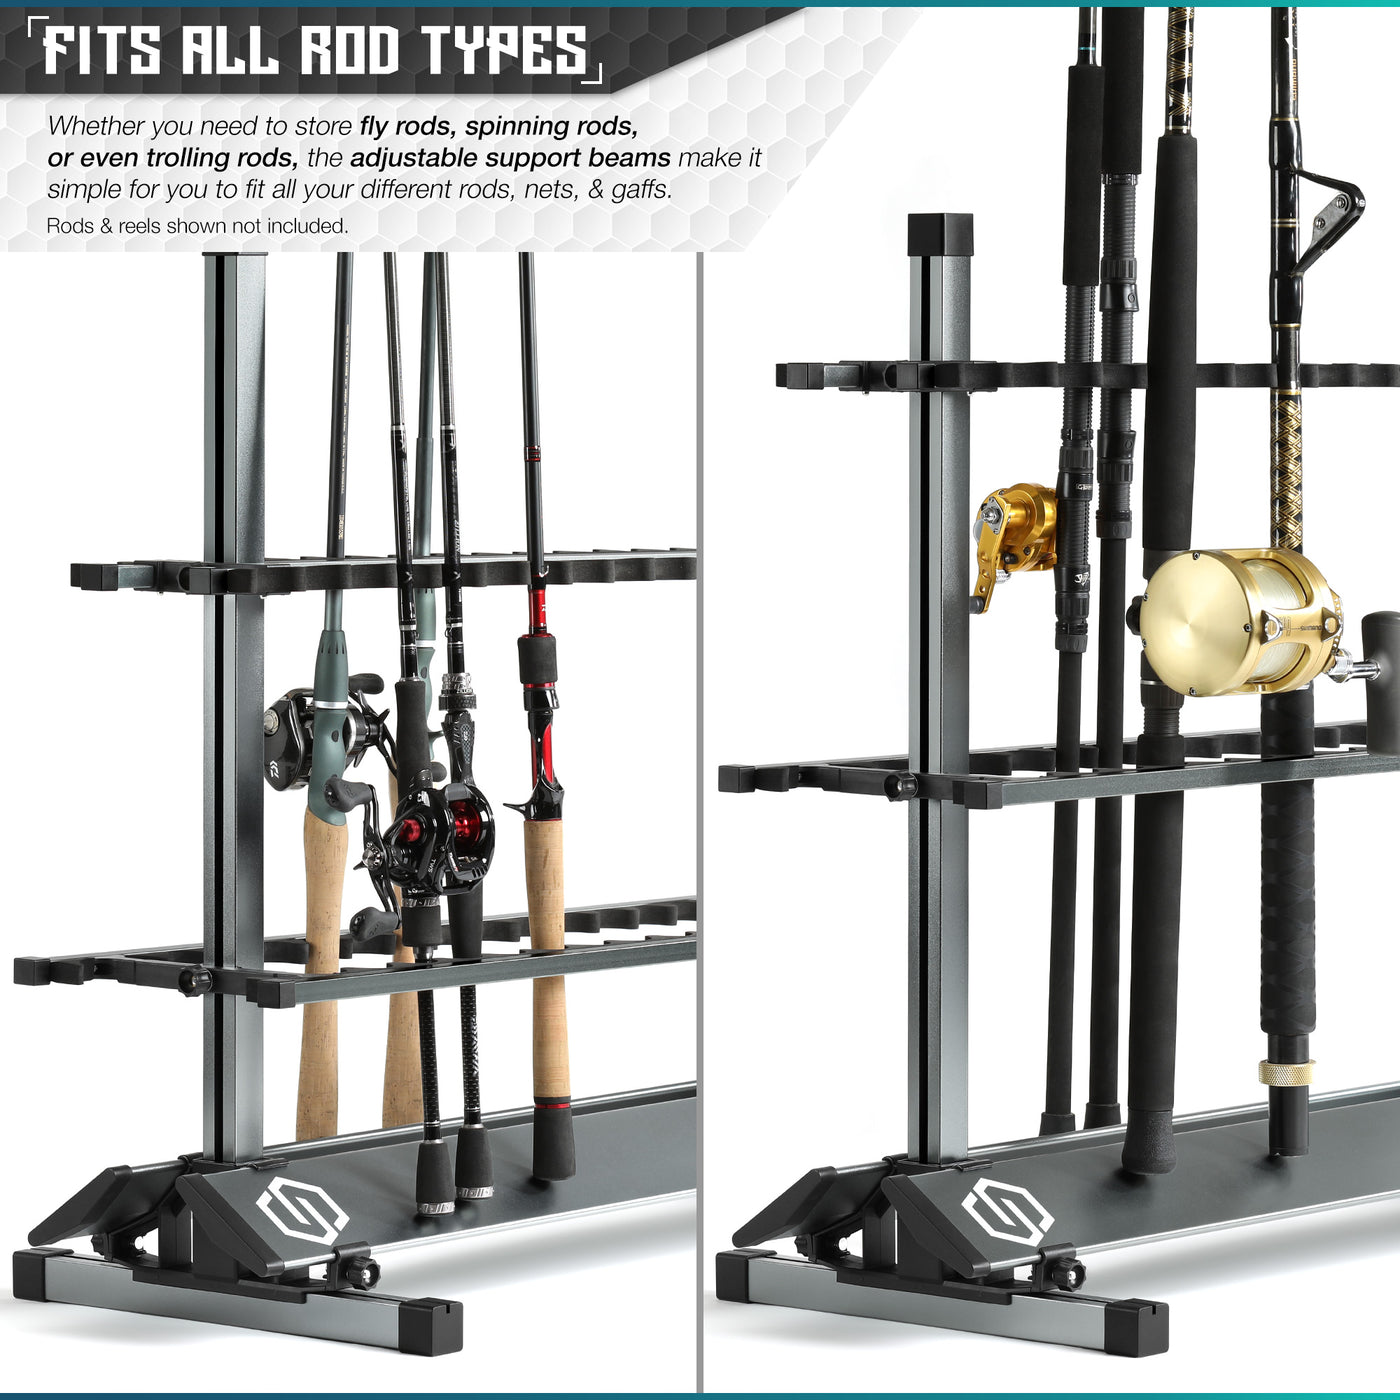 R8 Fishing Rod Rack & Holder – Formatt